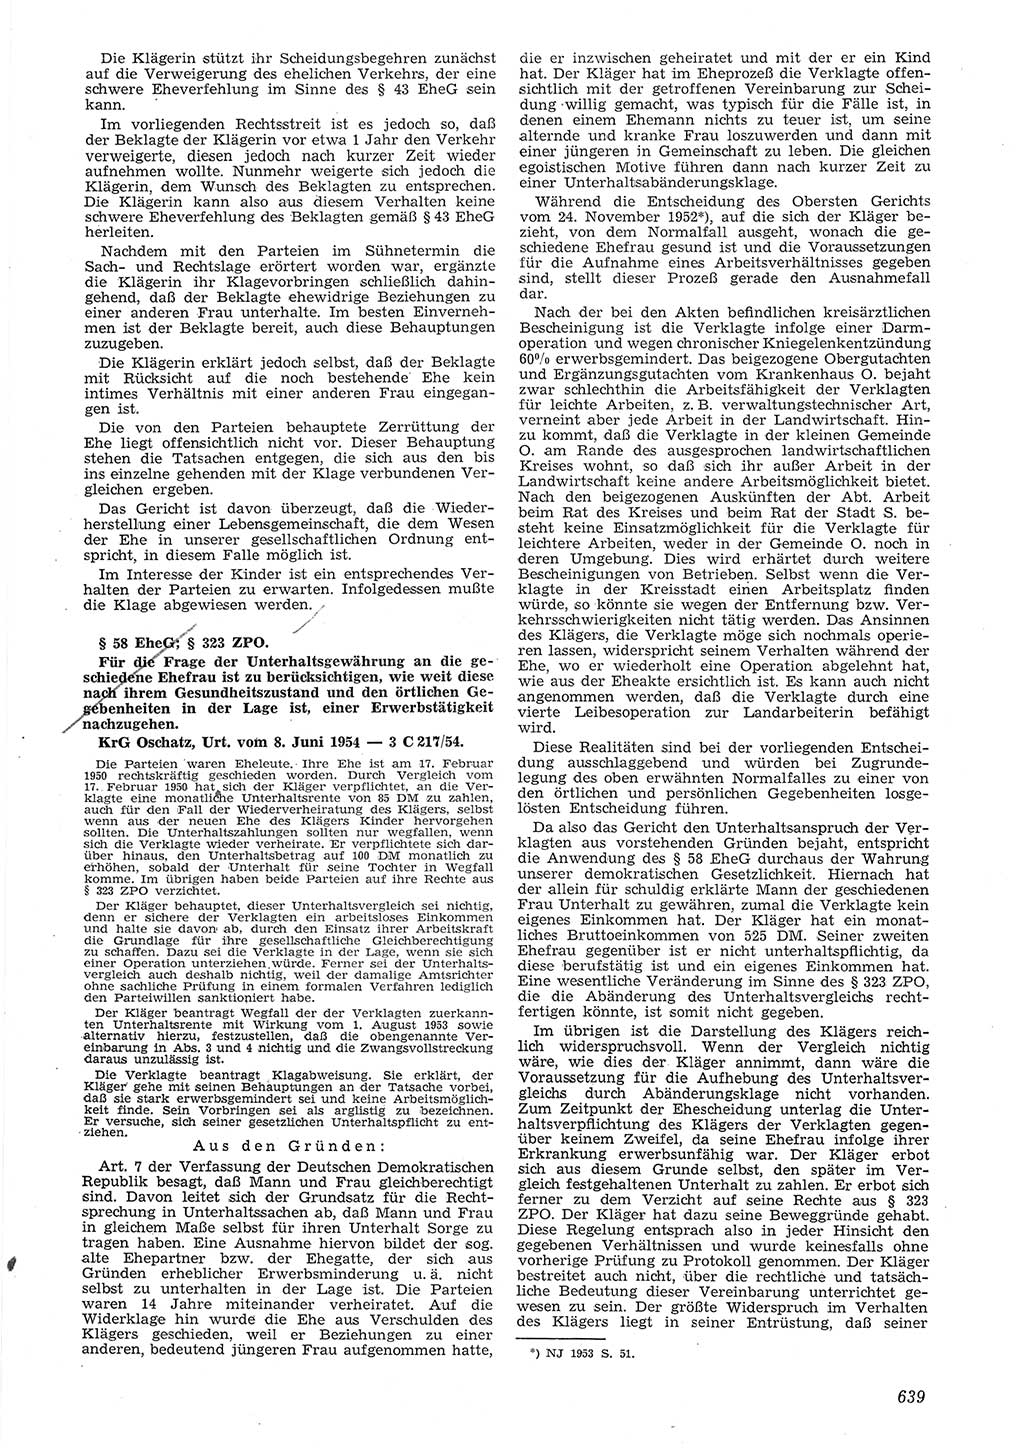 Neue Justiz (NJ), Zeitschrift für Recht und Rechtswissenschaft [Deutsche Demokratische Republik (DDR)], 8. Jahrgang 1954, Seite 639 (NJ DDR 1954, S. 639)